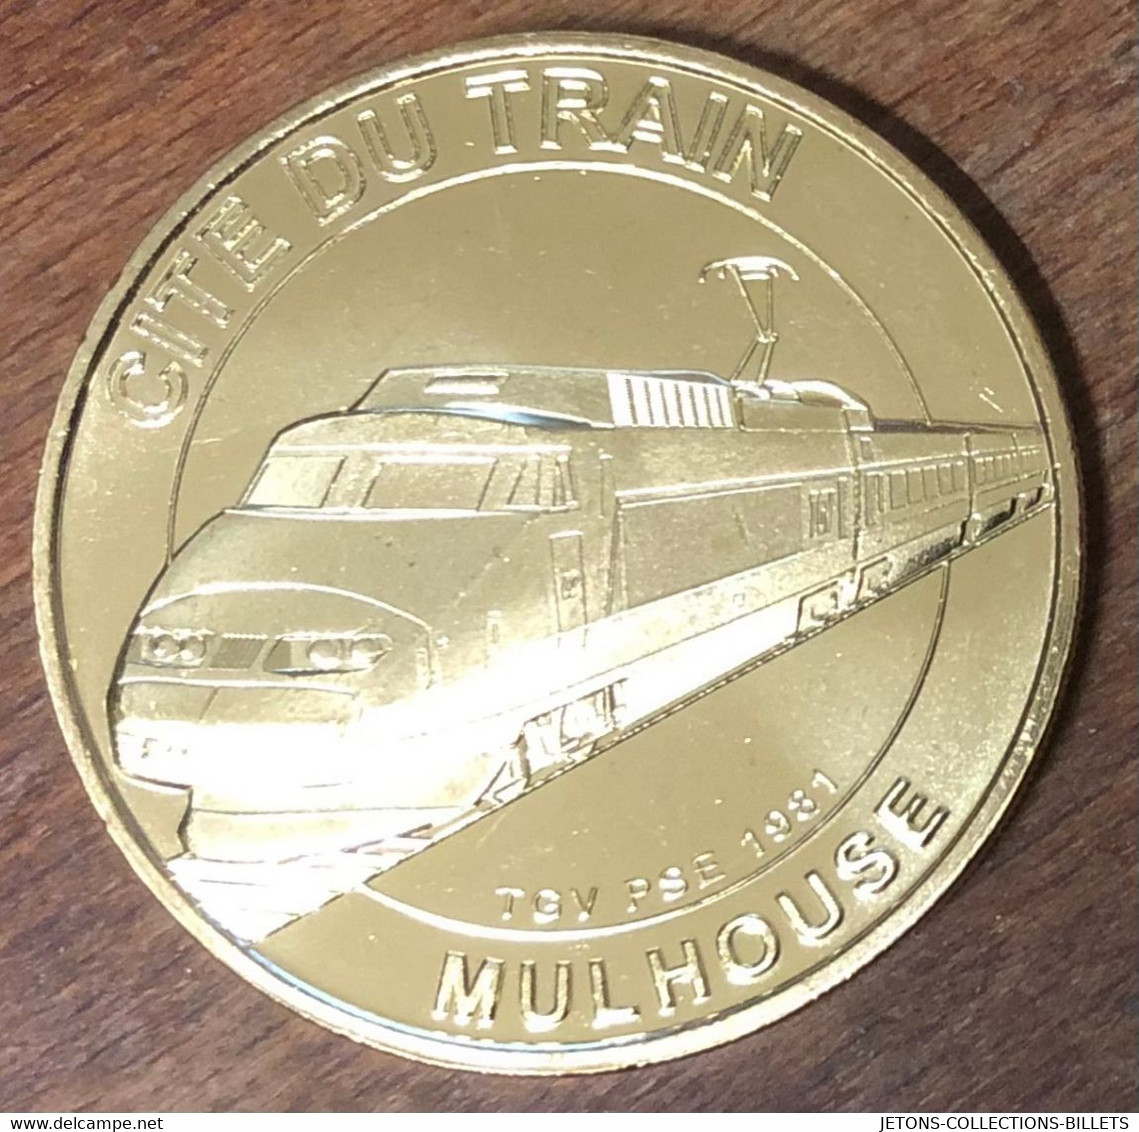 68 MULHOUSE CITÉ DU TRAIN TGV MDP 2021 MÉDAILLE SOUVENIR MONNAIE DE PARIS JETON TOURISTIQUE MEDALS COINS TOKENS - 2021